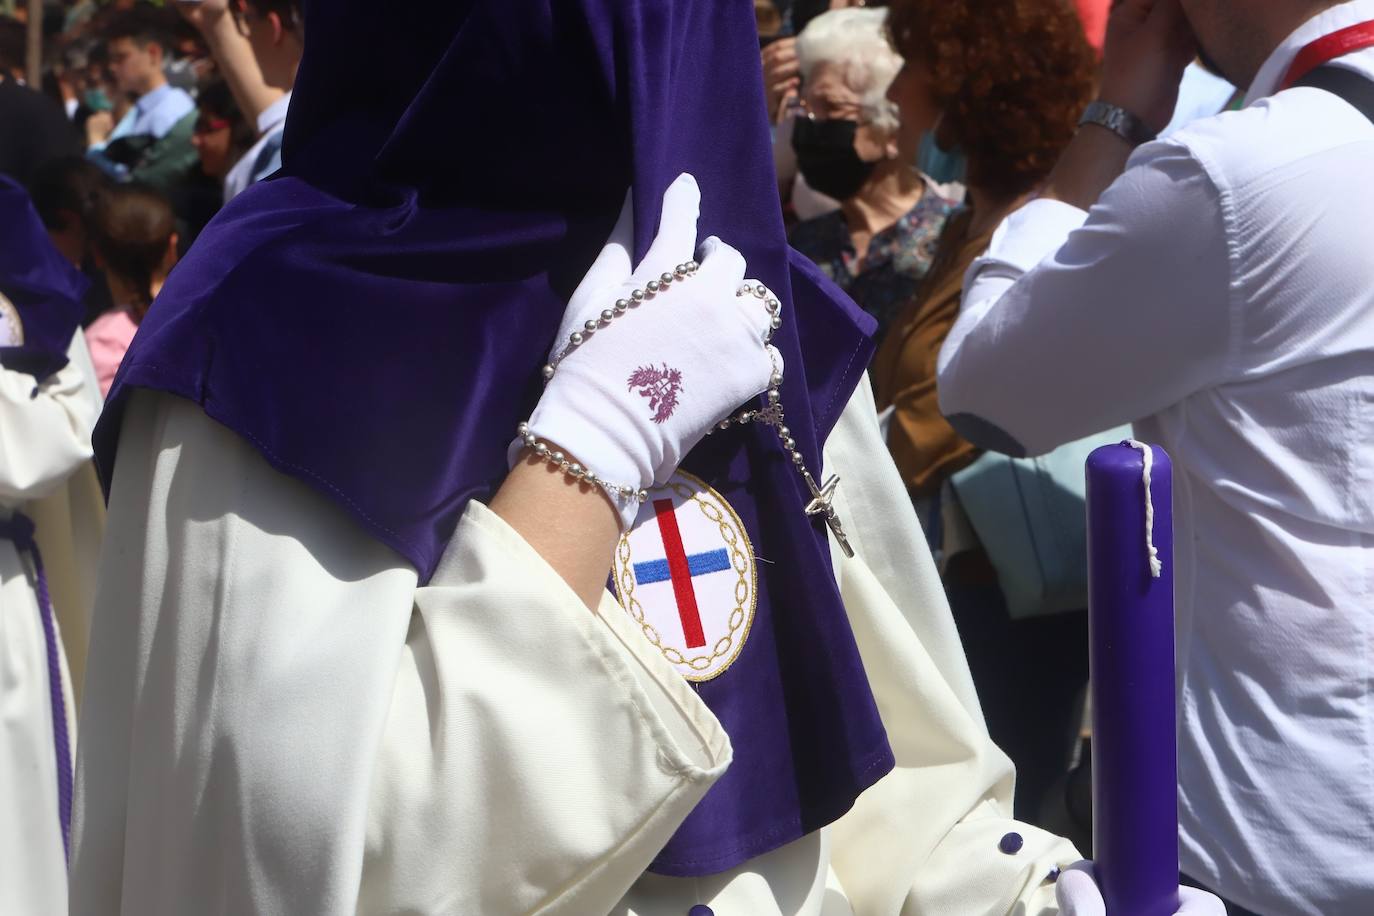 El imágenes, el Rescatado reparte su gracia el Domingo de Ramos en Córdoba